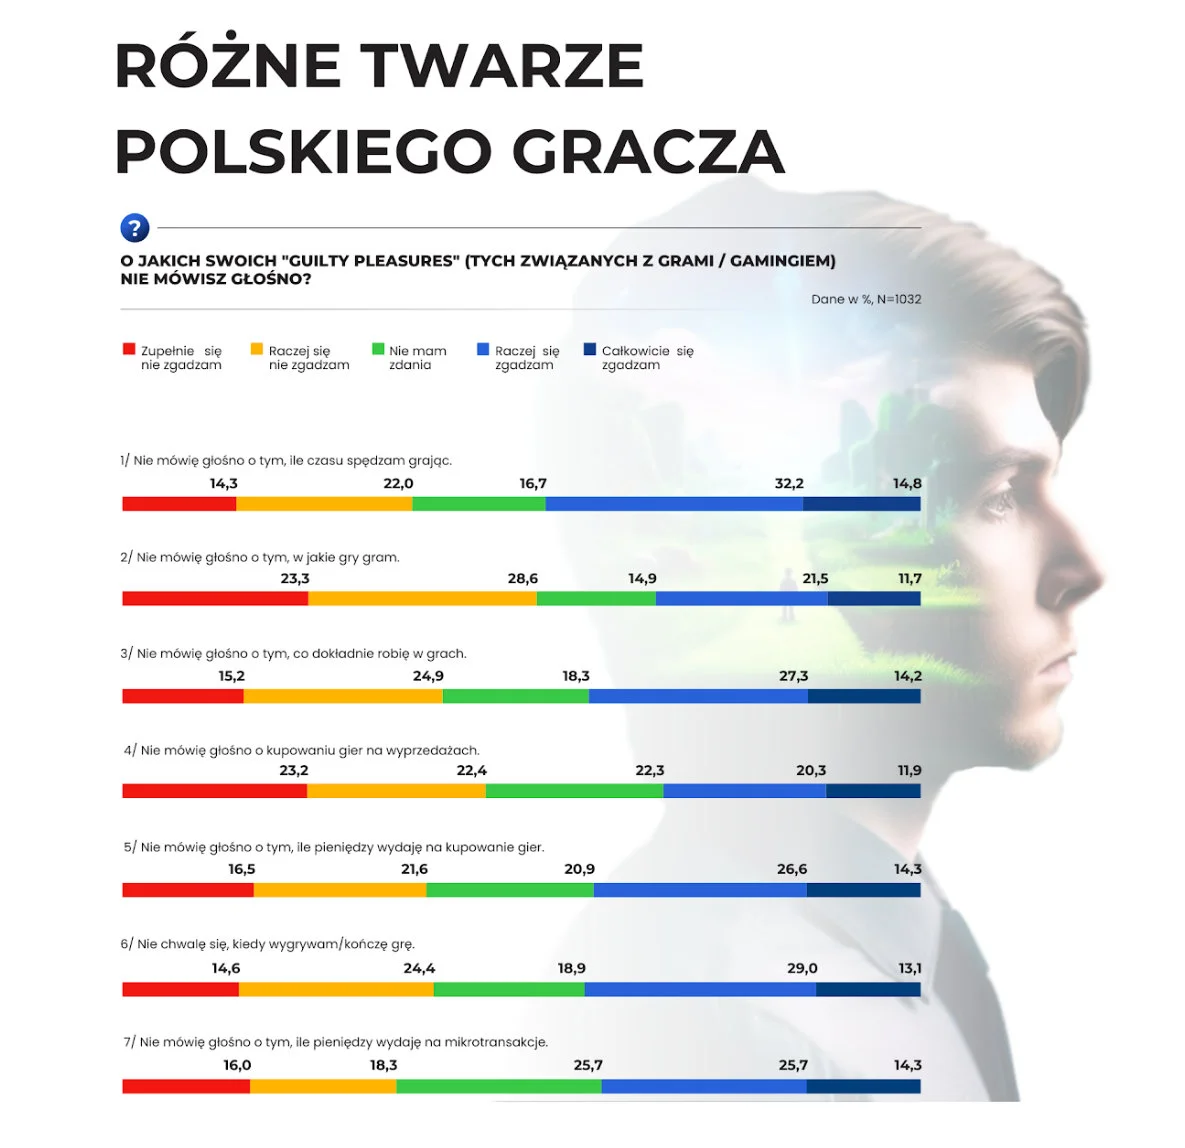 Źródło: Różne twarze polskiego gracza. Raport 2023